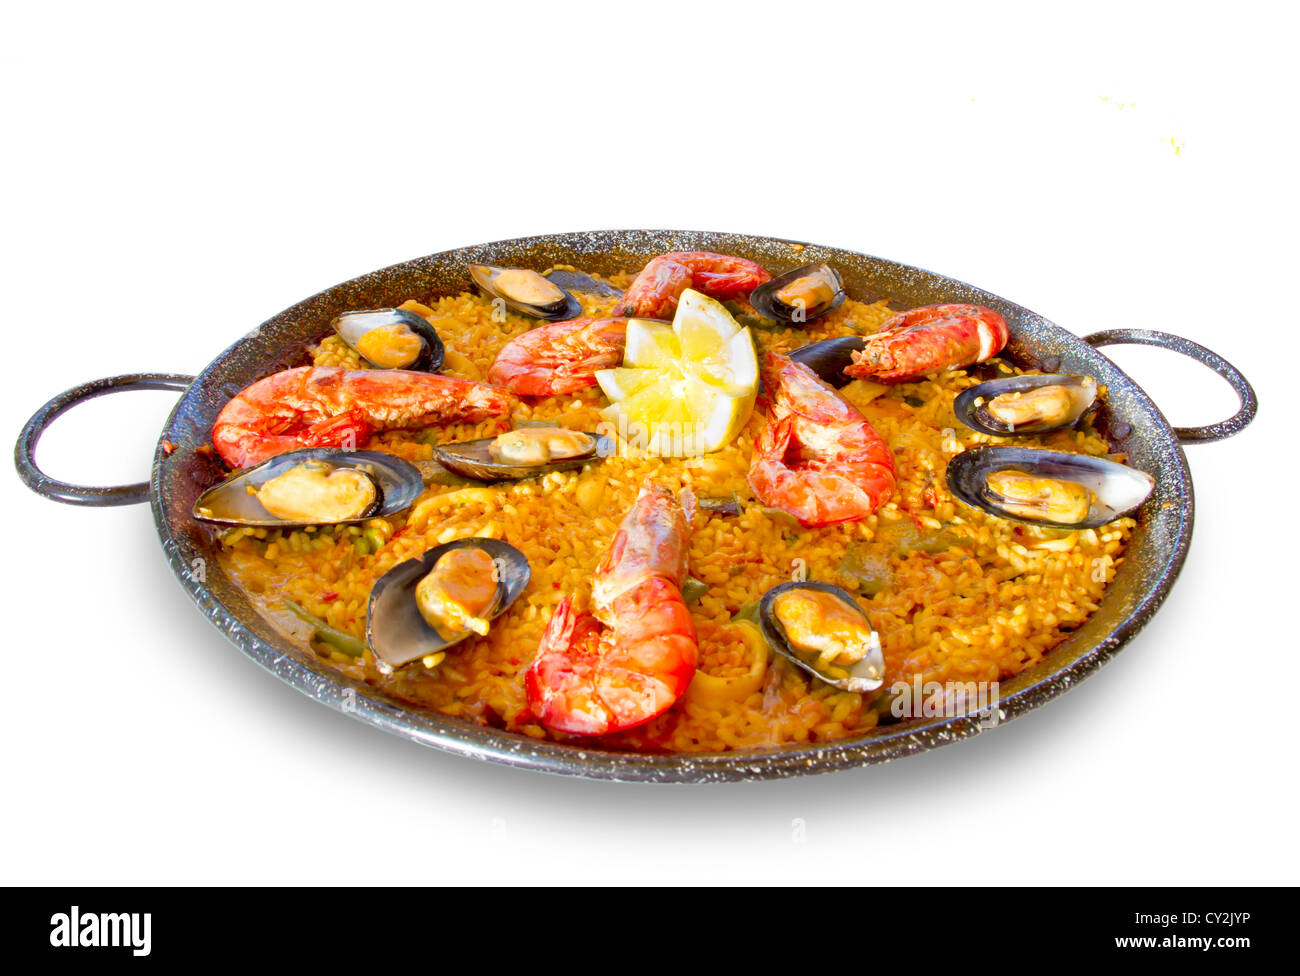 Spanish paella 'mixta' from Valencia Stock Photo